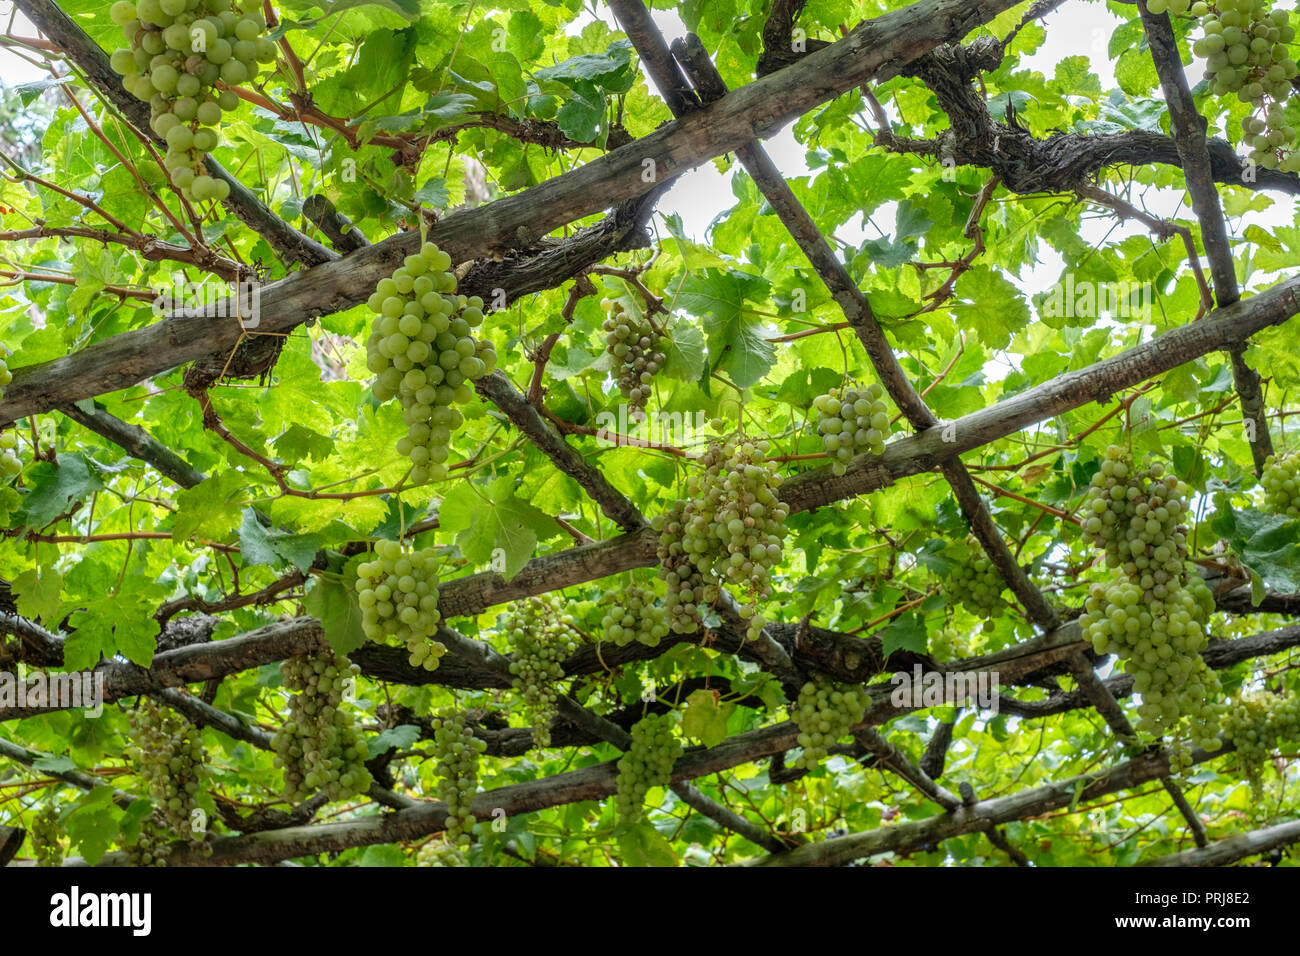 Trauben am Weinstock/Grapevine hängend auf Holzbalken Stockfoto